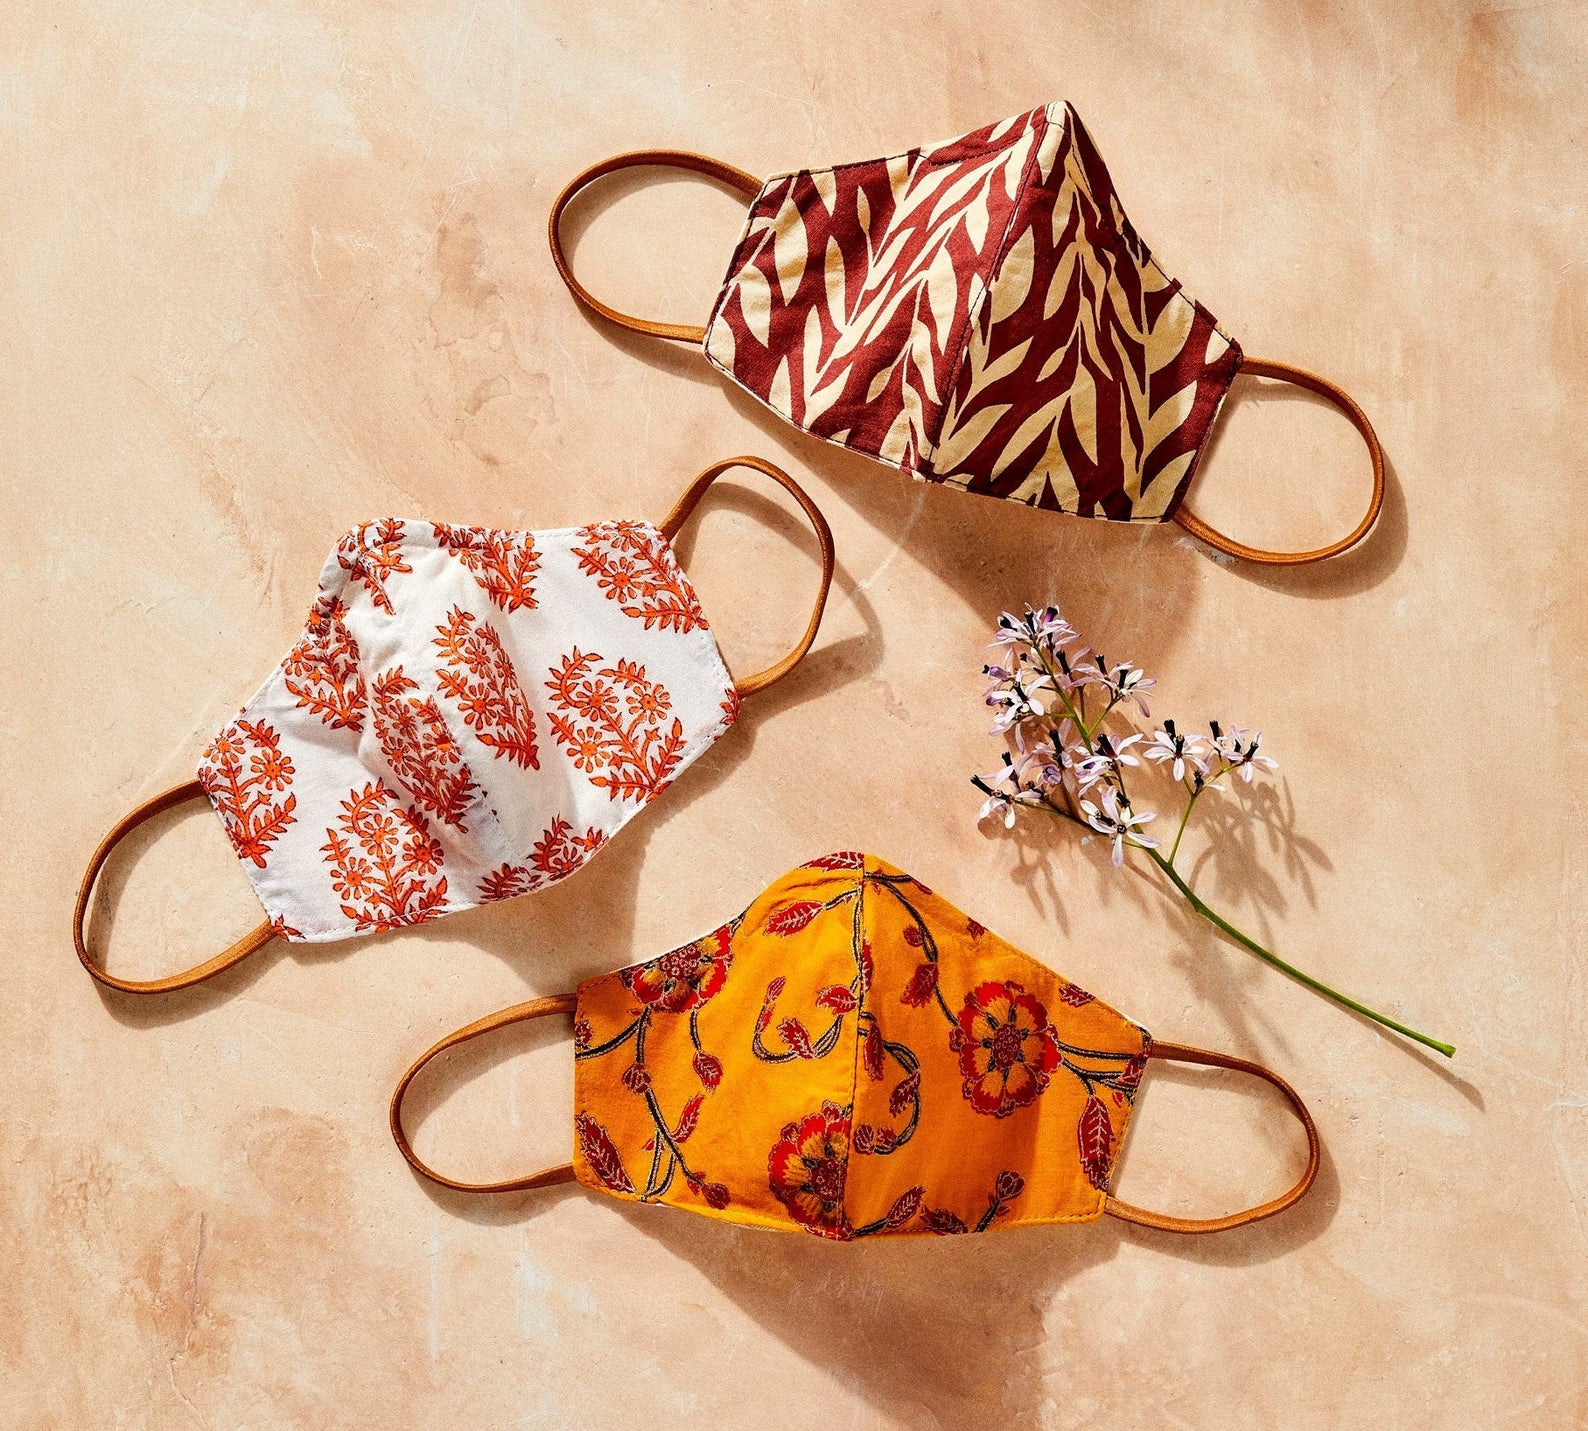 Ensemble de 3 masques de protection respiratoire en coton cousu à la main et décoré de motifs, DandEDiscovered, 51,18€.